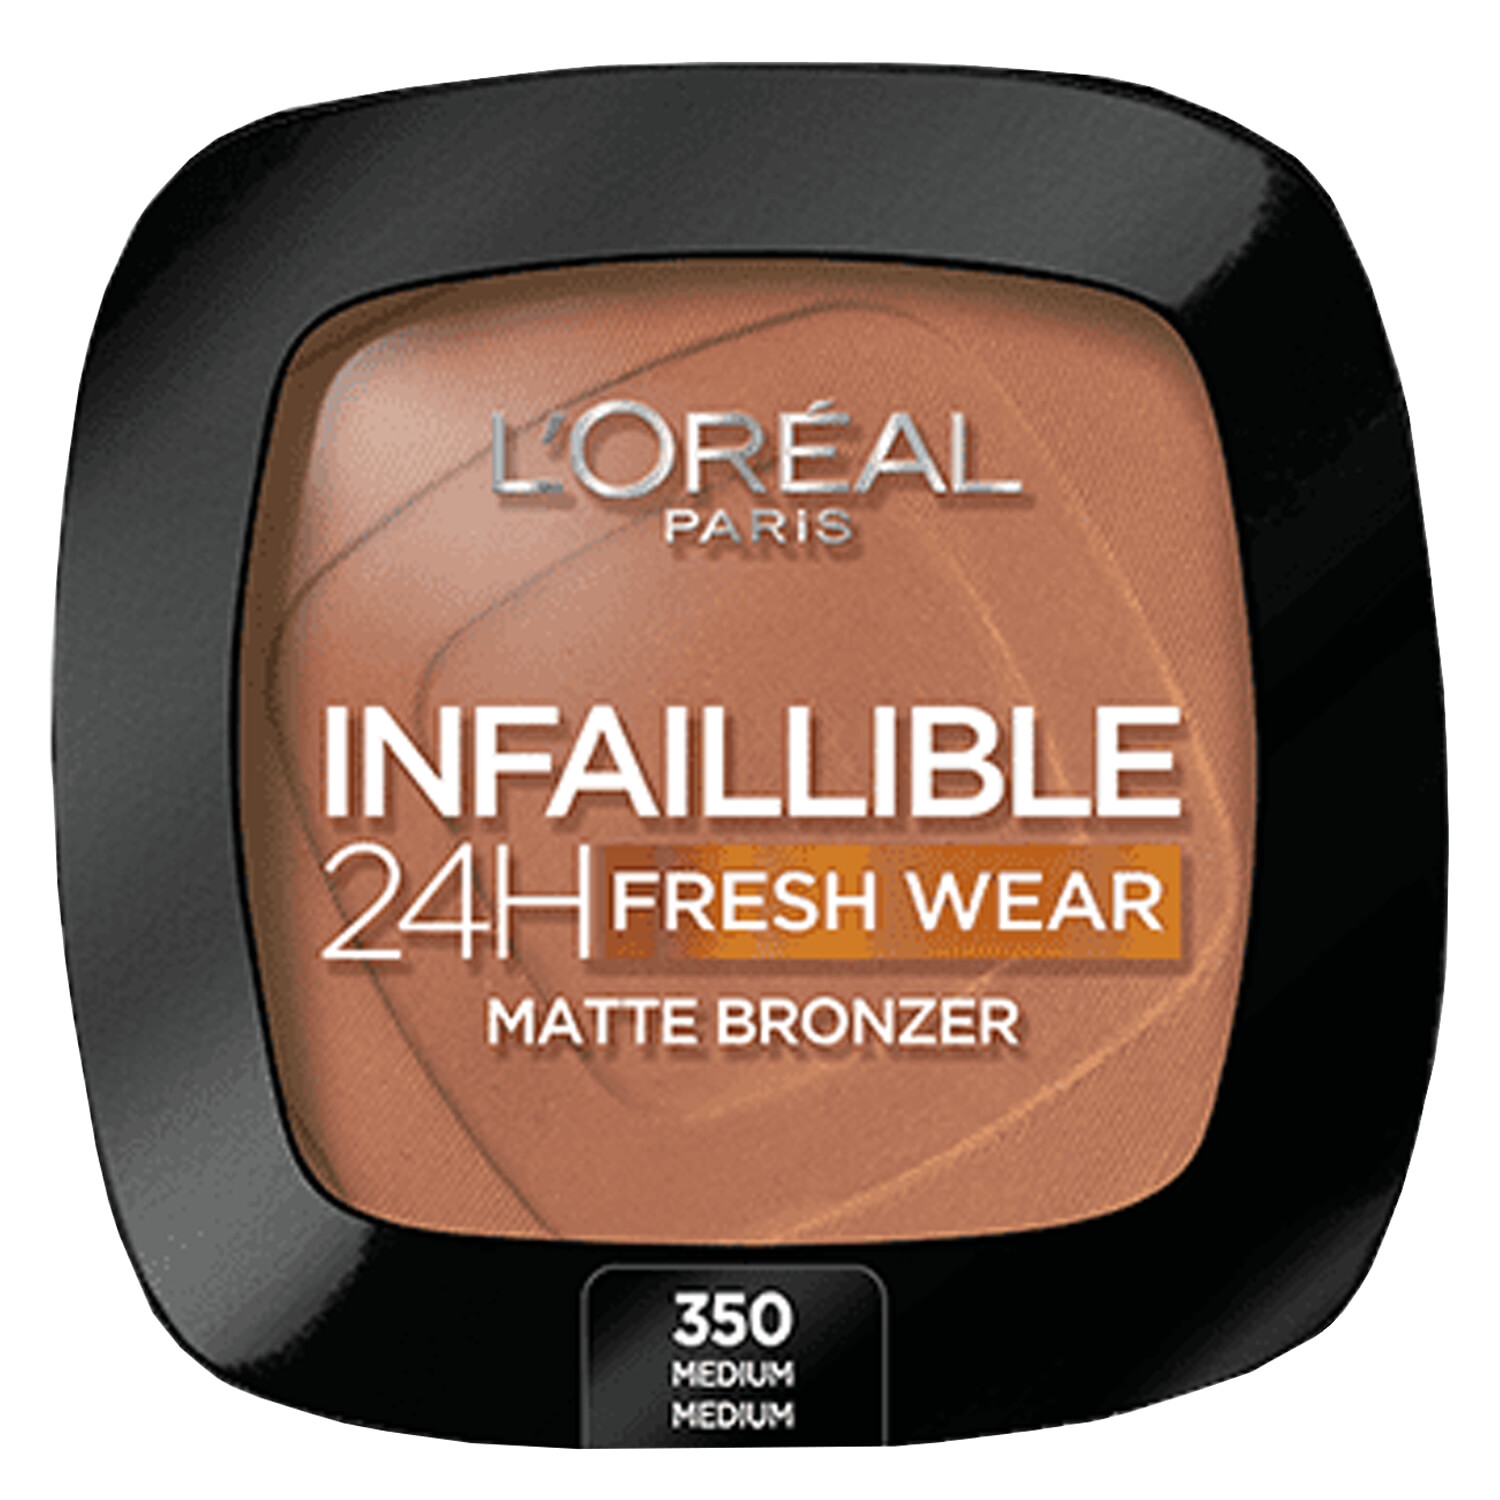 Produktbild von LOréal Infaillible - 24H Fresh Wear Matte Bronzer 350 Medium